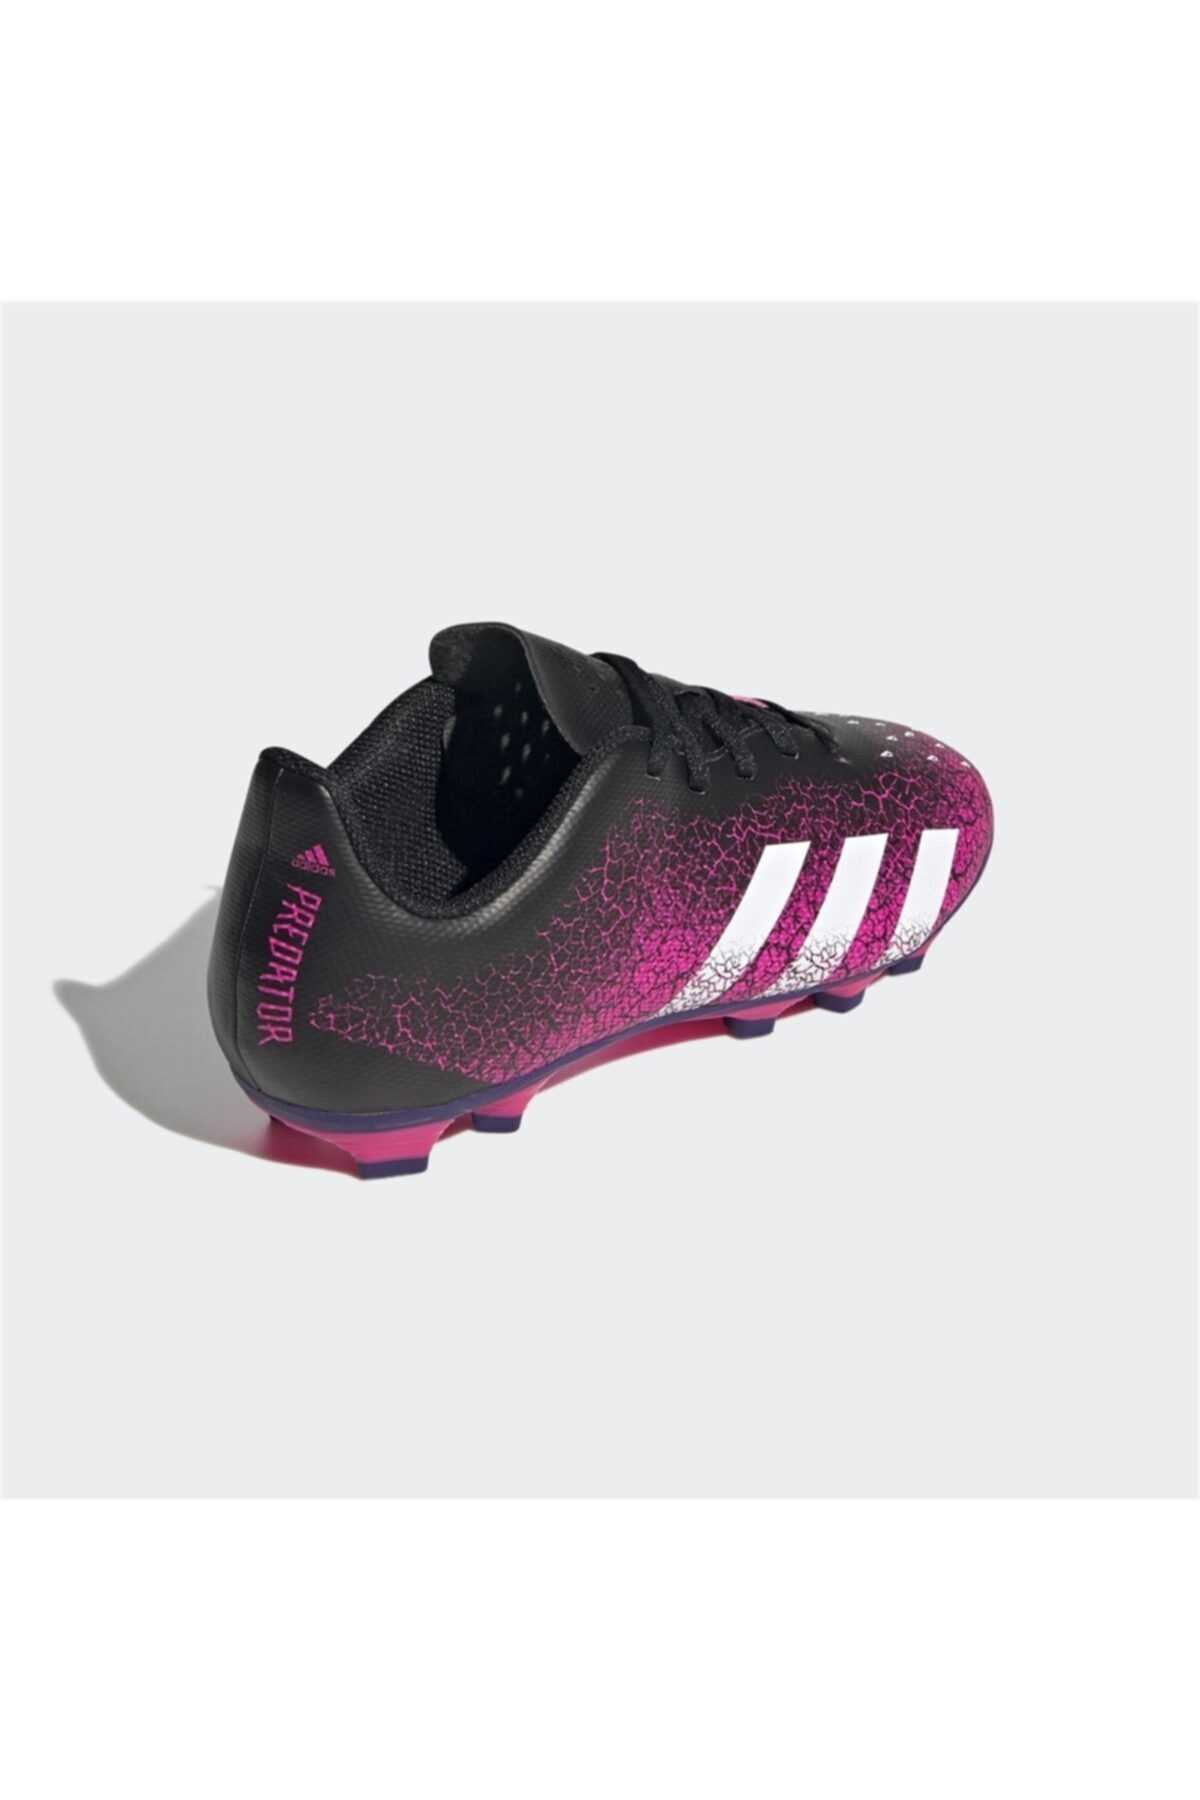 خرید اینترنتی کفش فوتبال دخترانه اسپرت برند آدیداس رنگ مشکی کد ty99182708